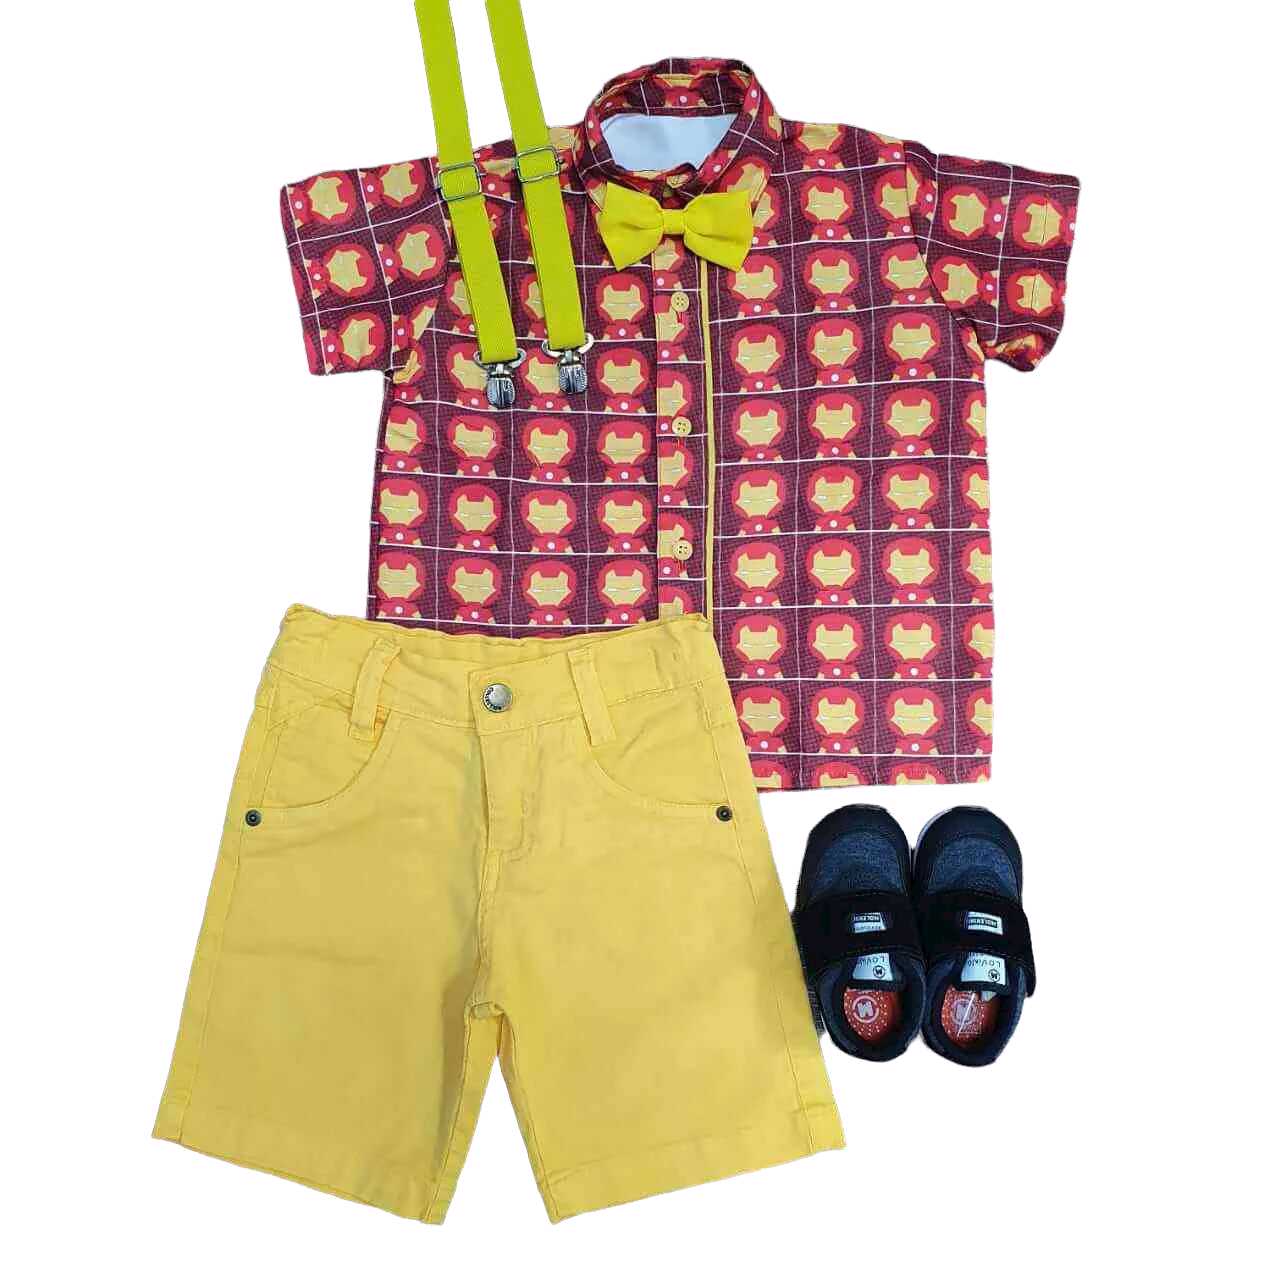 Bermuda Amarela com Camisa Homem de Ferro Infantil - Lojinha da Vivi